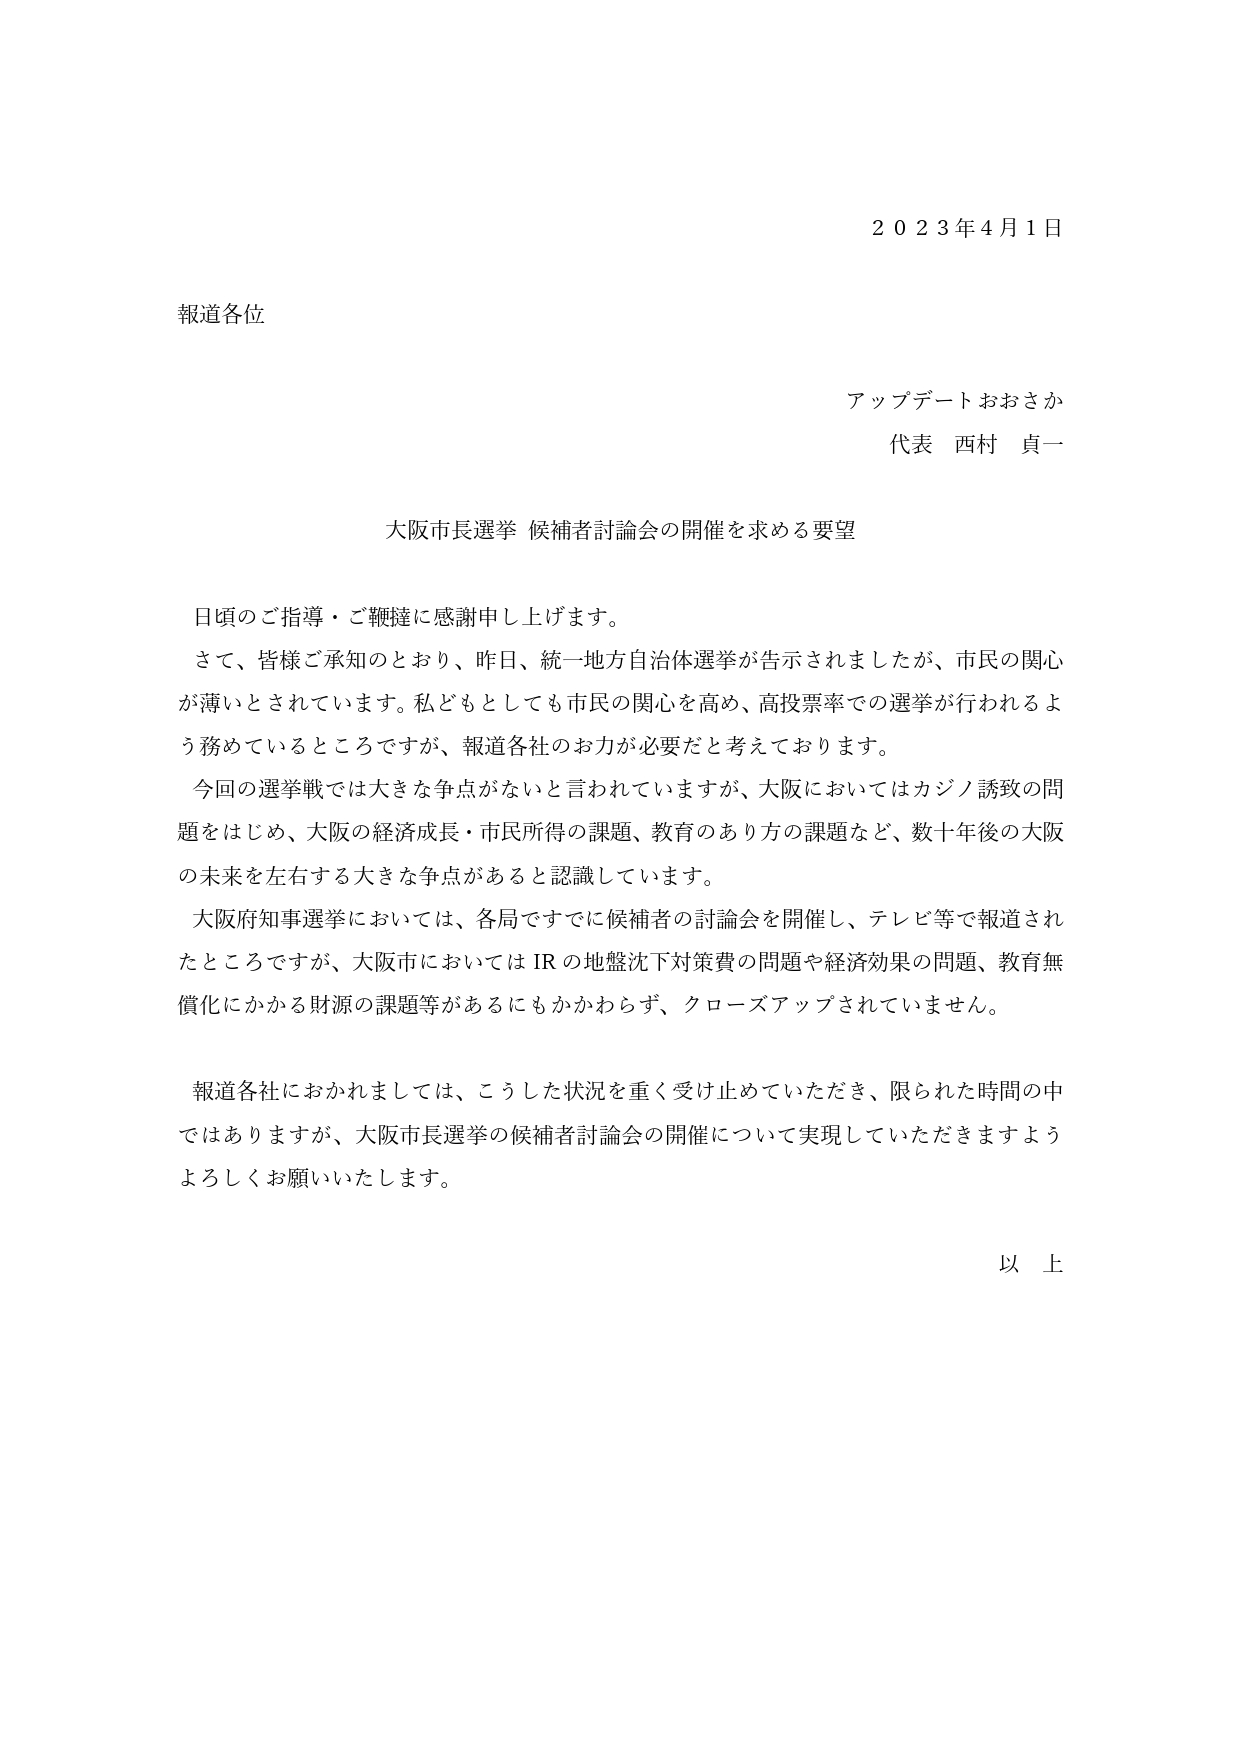 大阪市長選挙 候補者討論会の開催を求める要望書